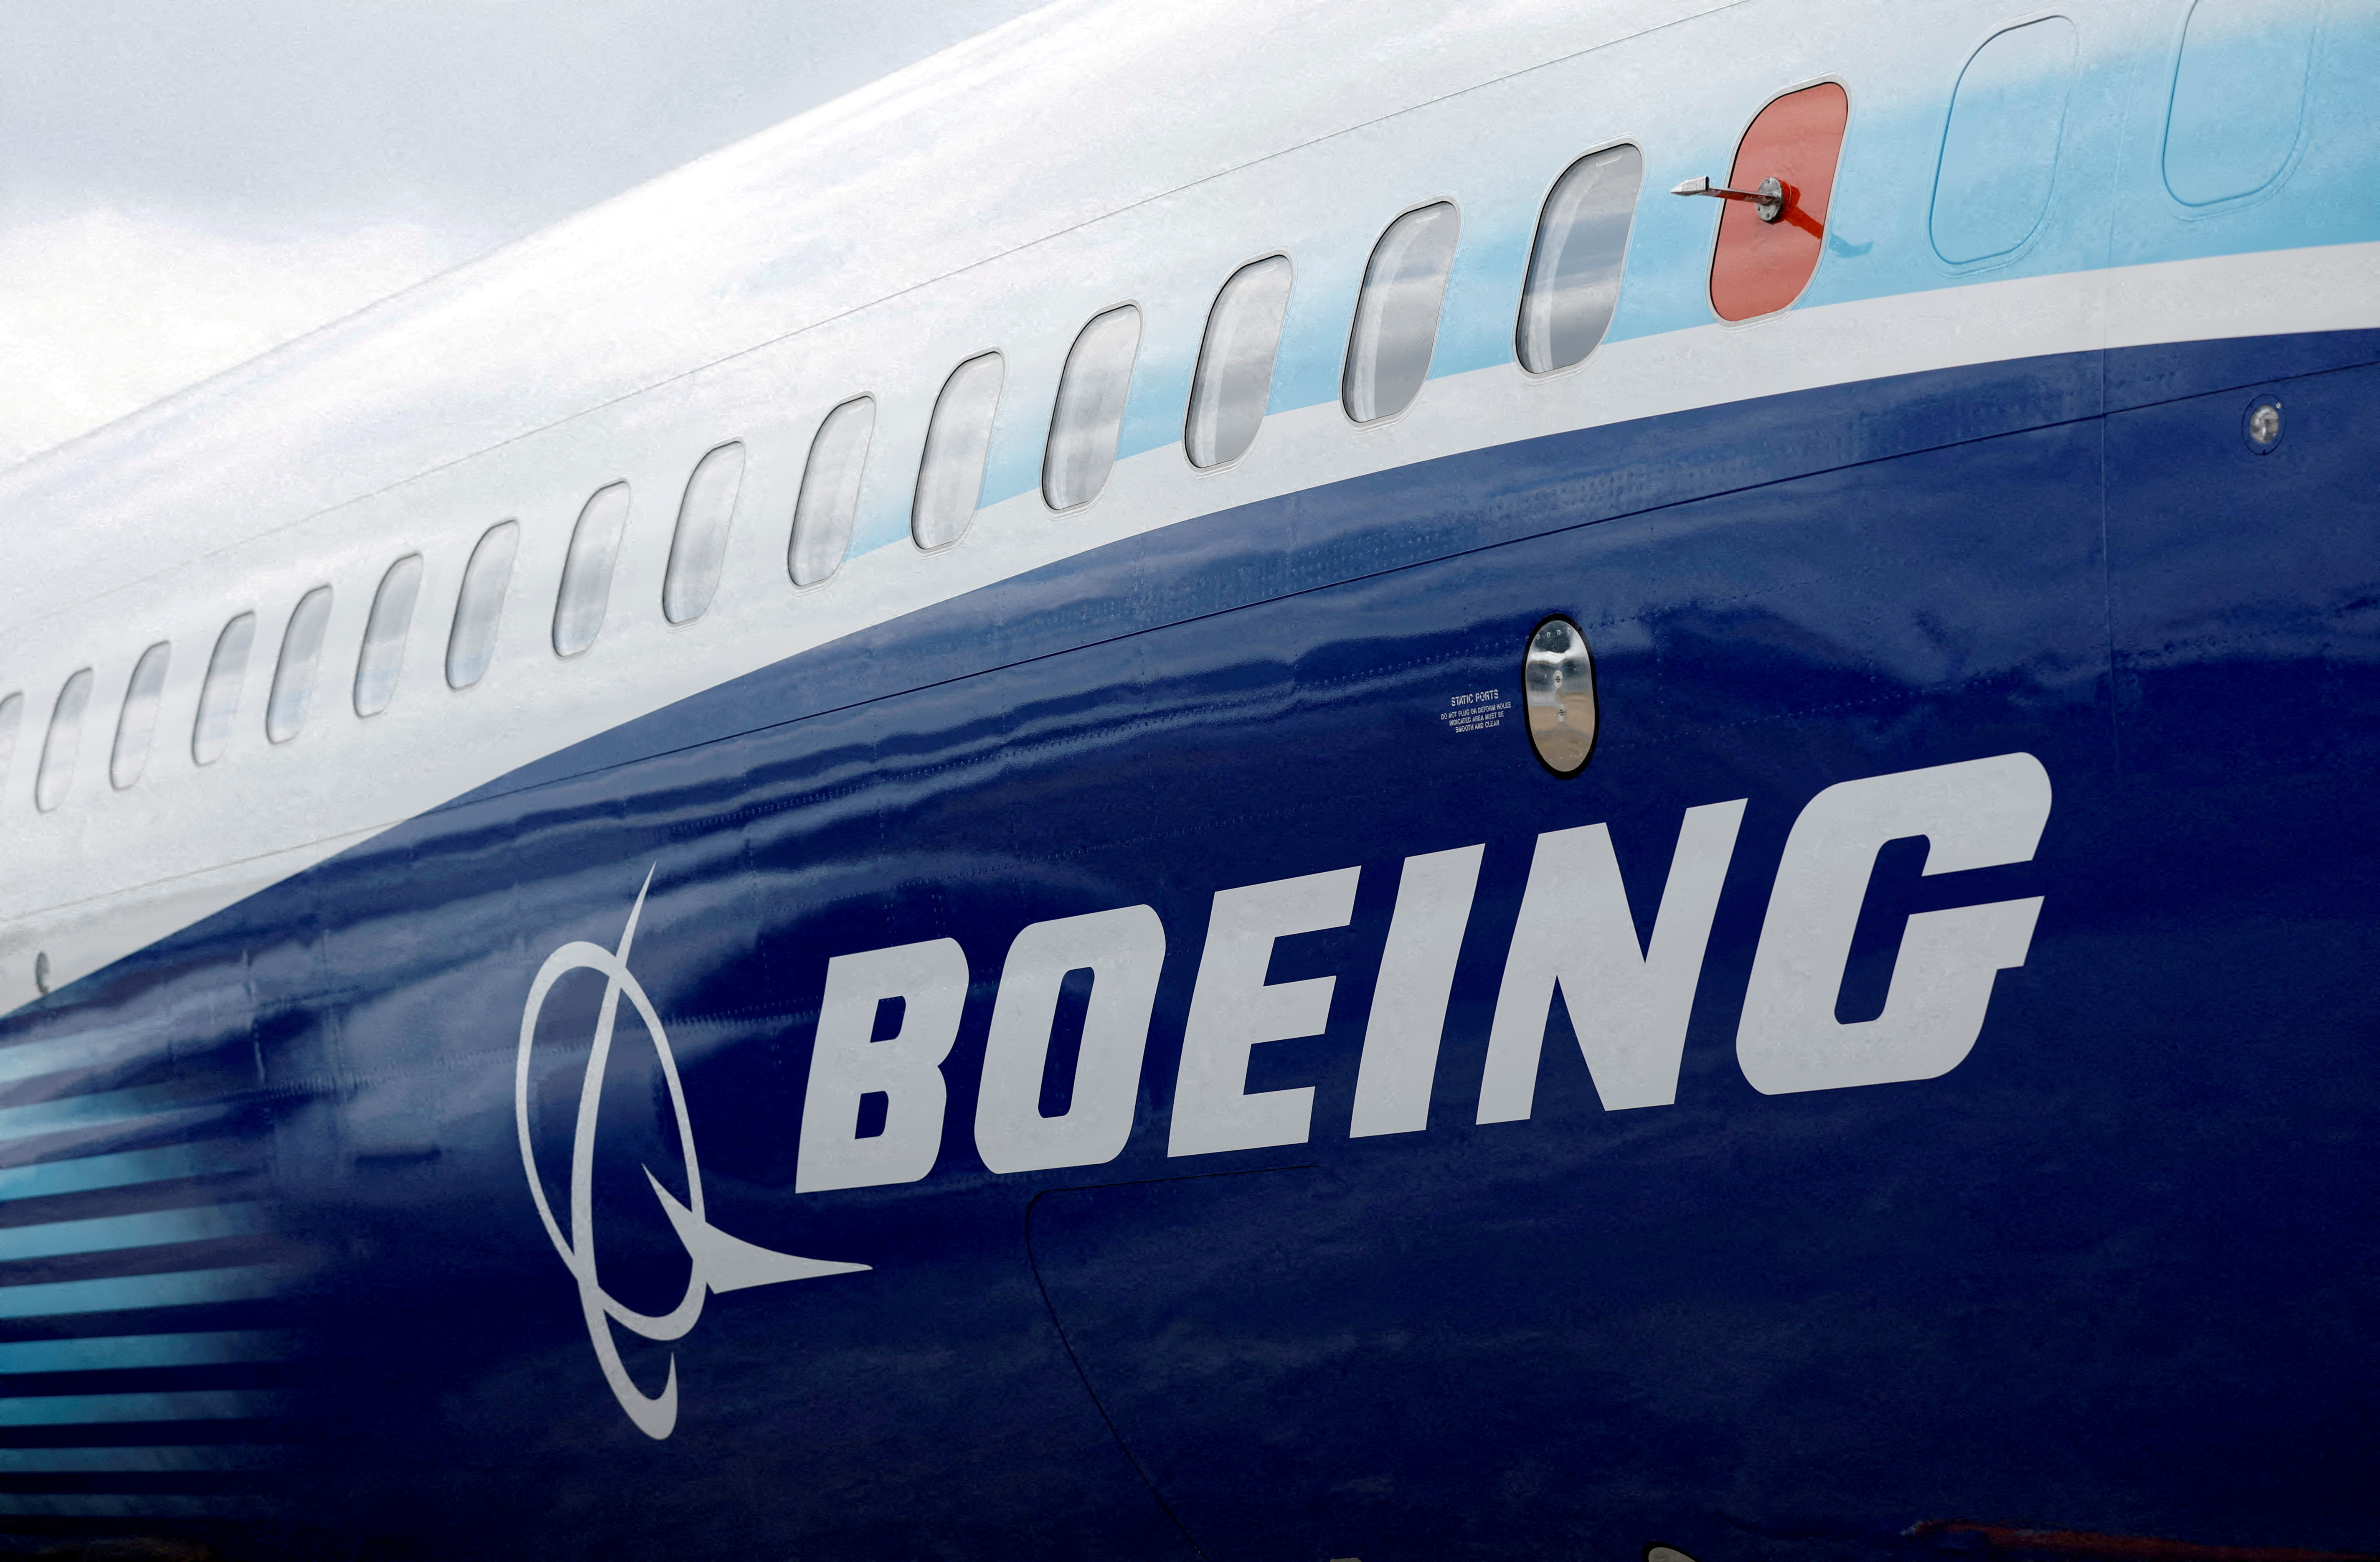 Comment Airbus fait-il pour rivaliser avec Boeing?